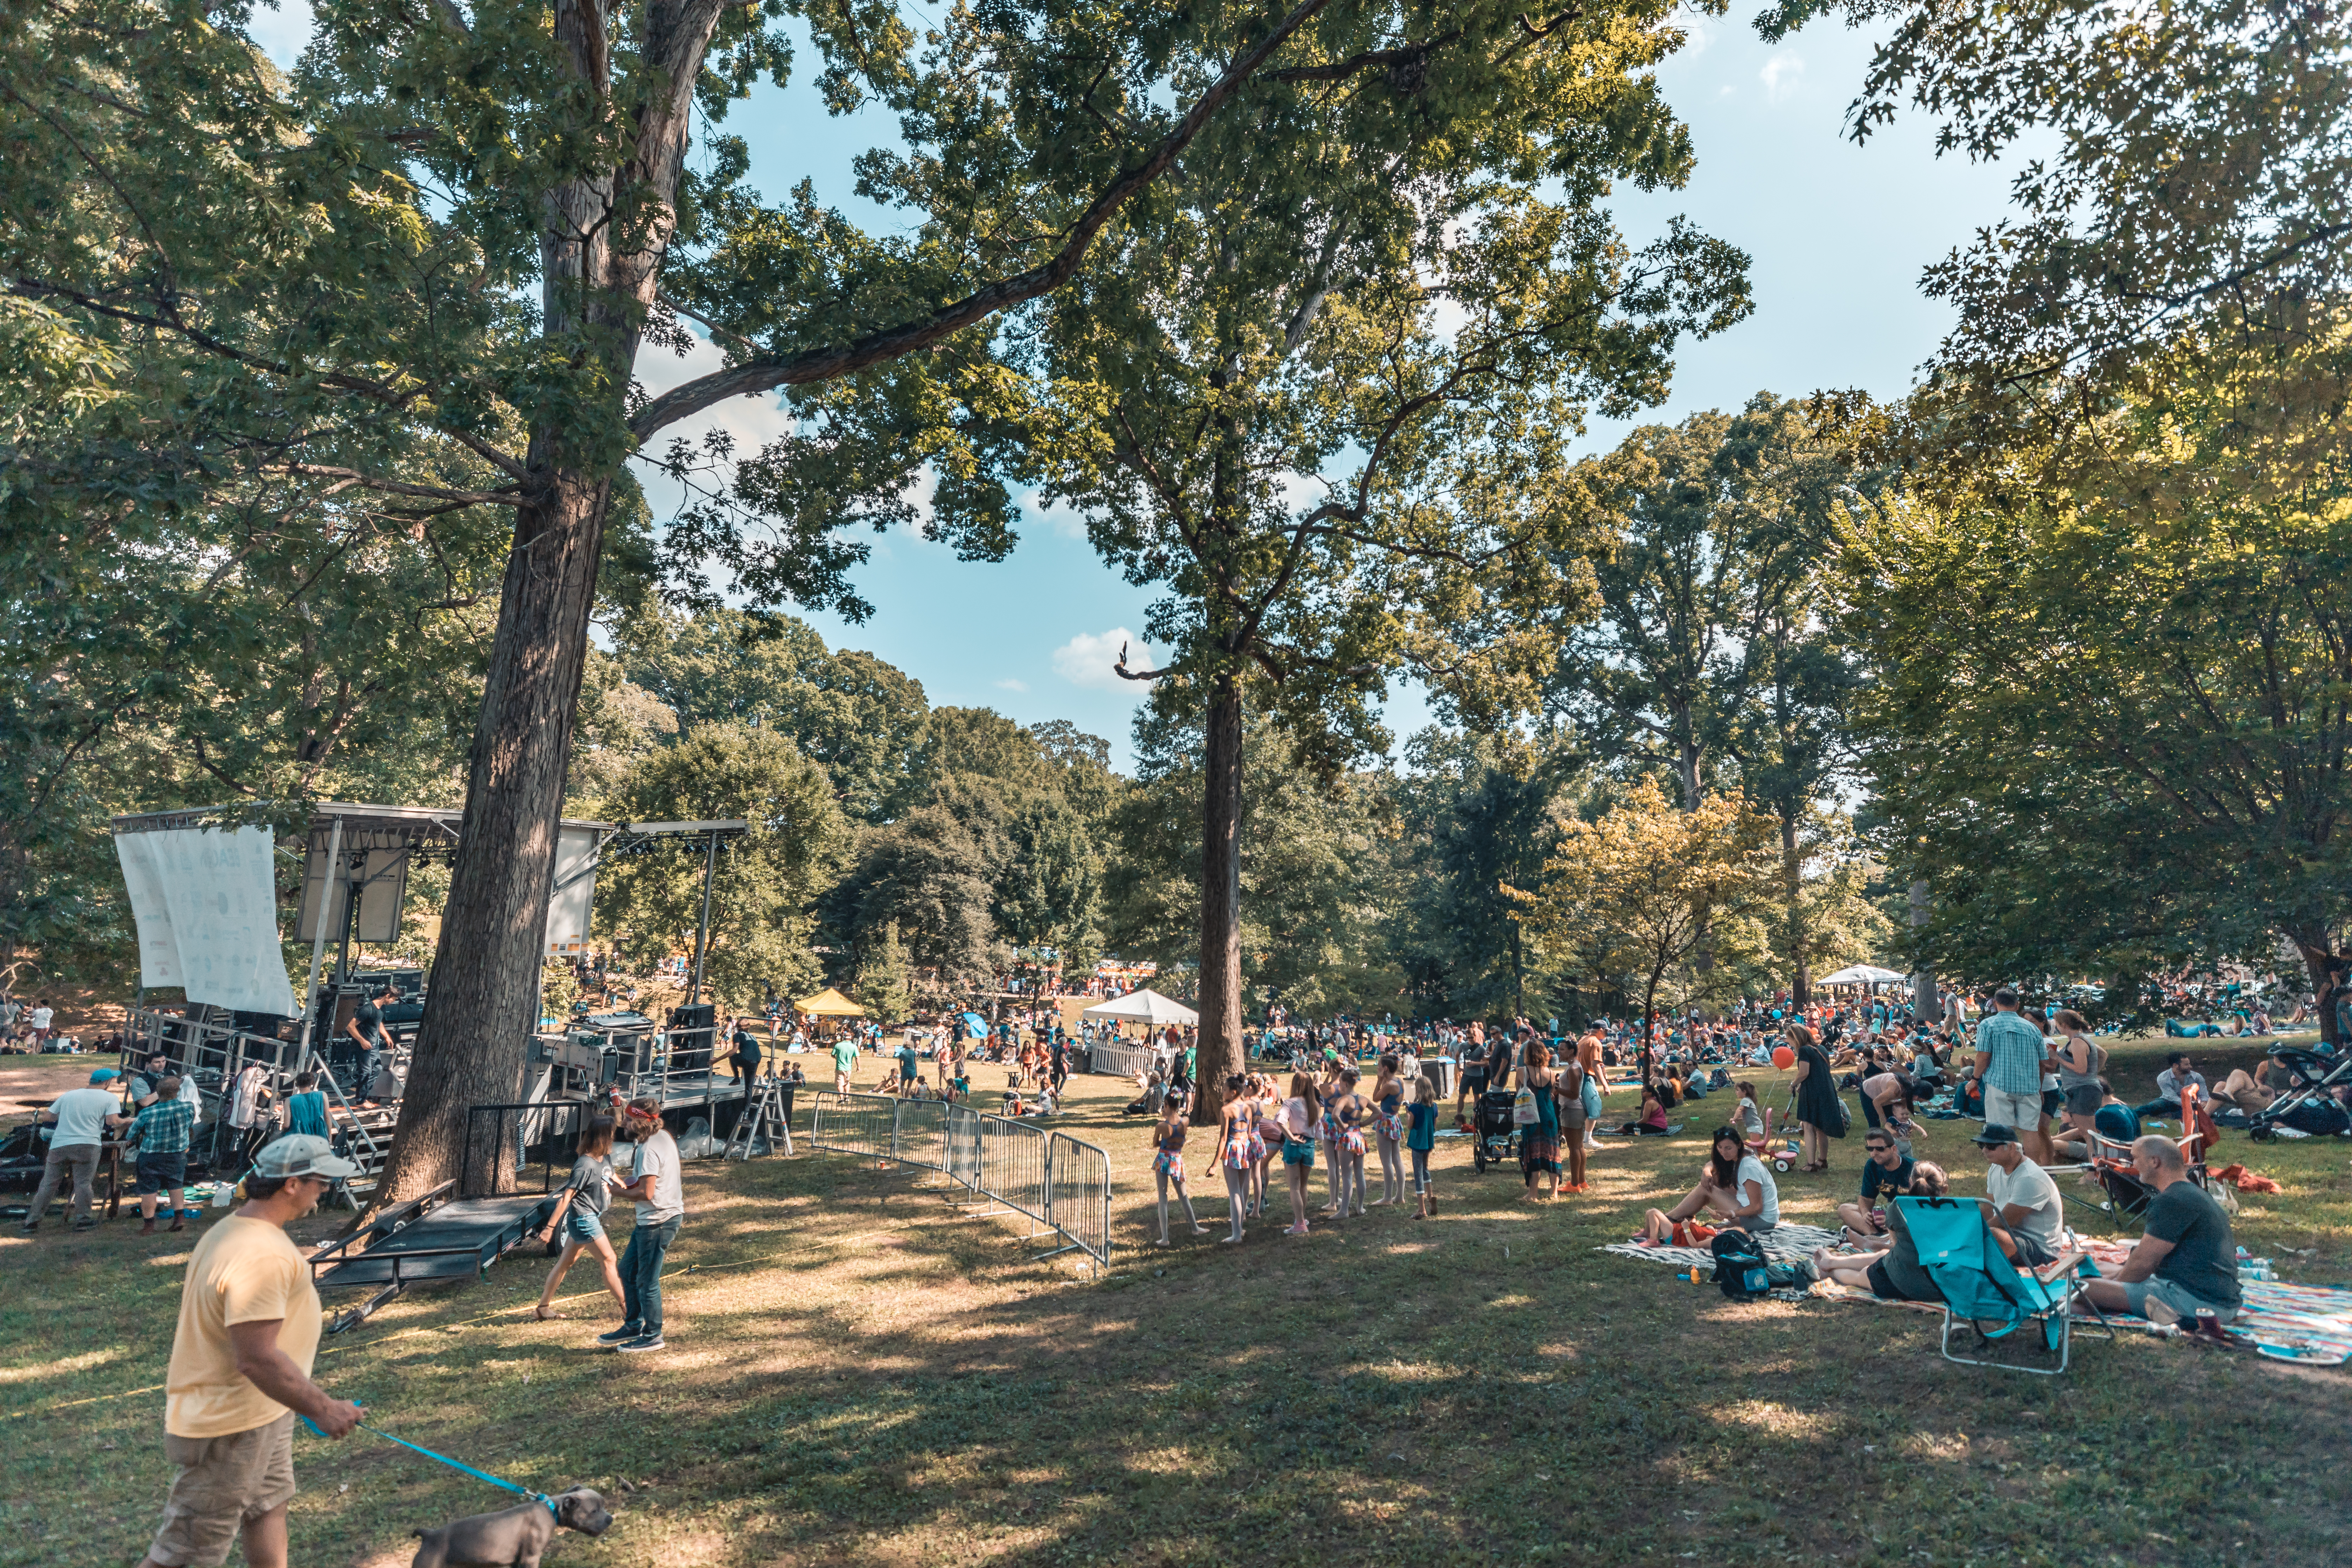 Grant Park Summer Shade Festival Recap